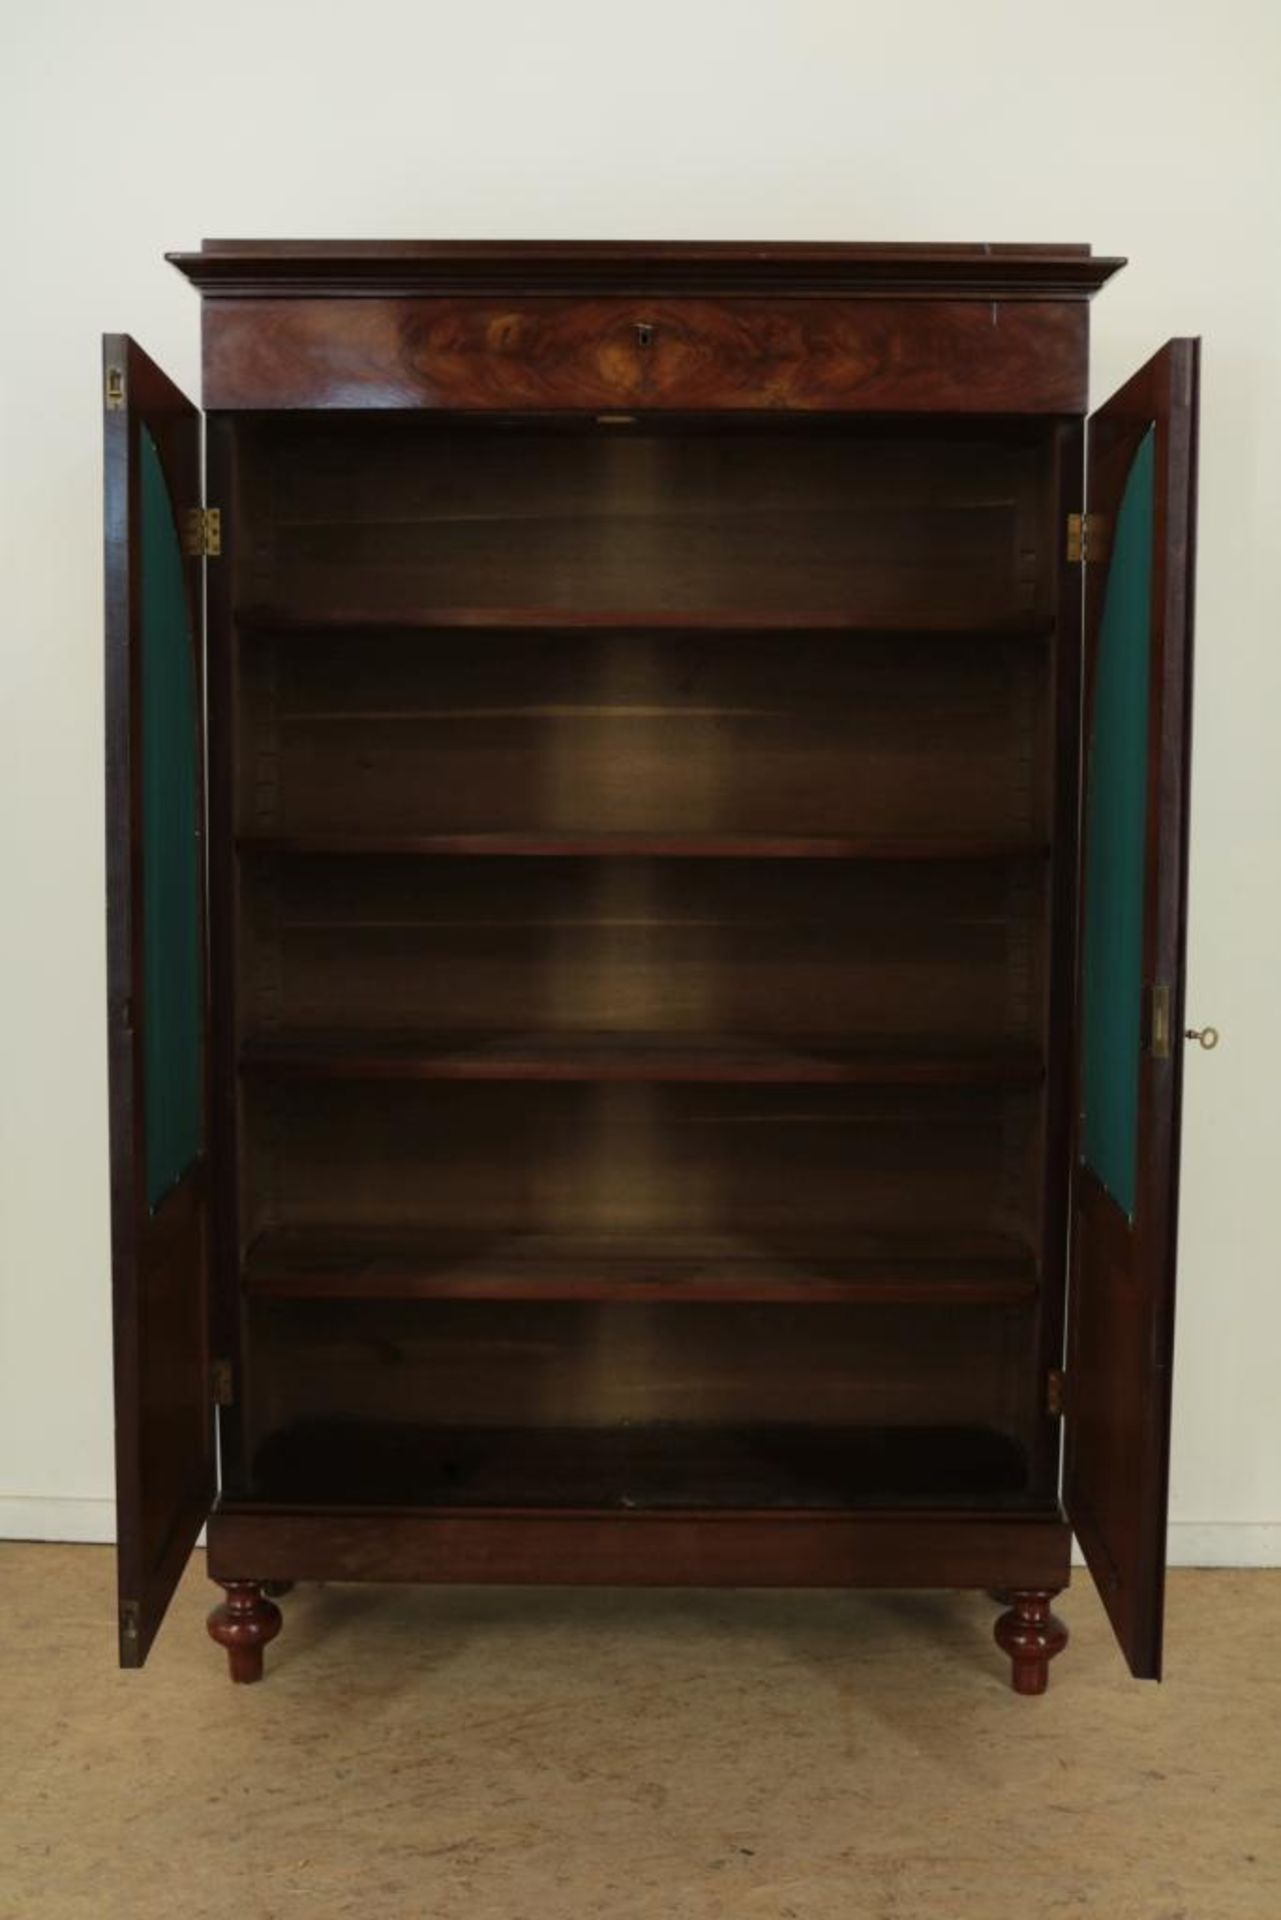 Mahonie zgn. burger-Empire boekenkast, met bovenin een lade, ca. 1840, h. 157, br. 100, d. 37 cm. - Bild 2 aus 3